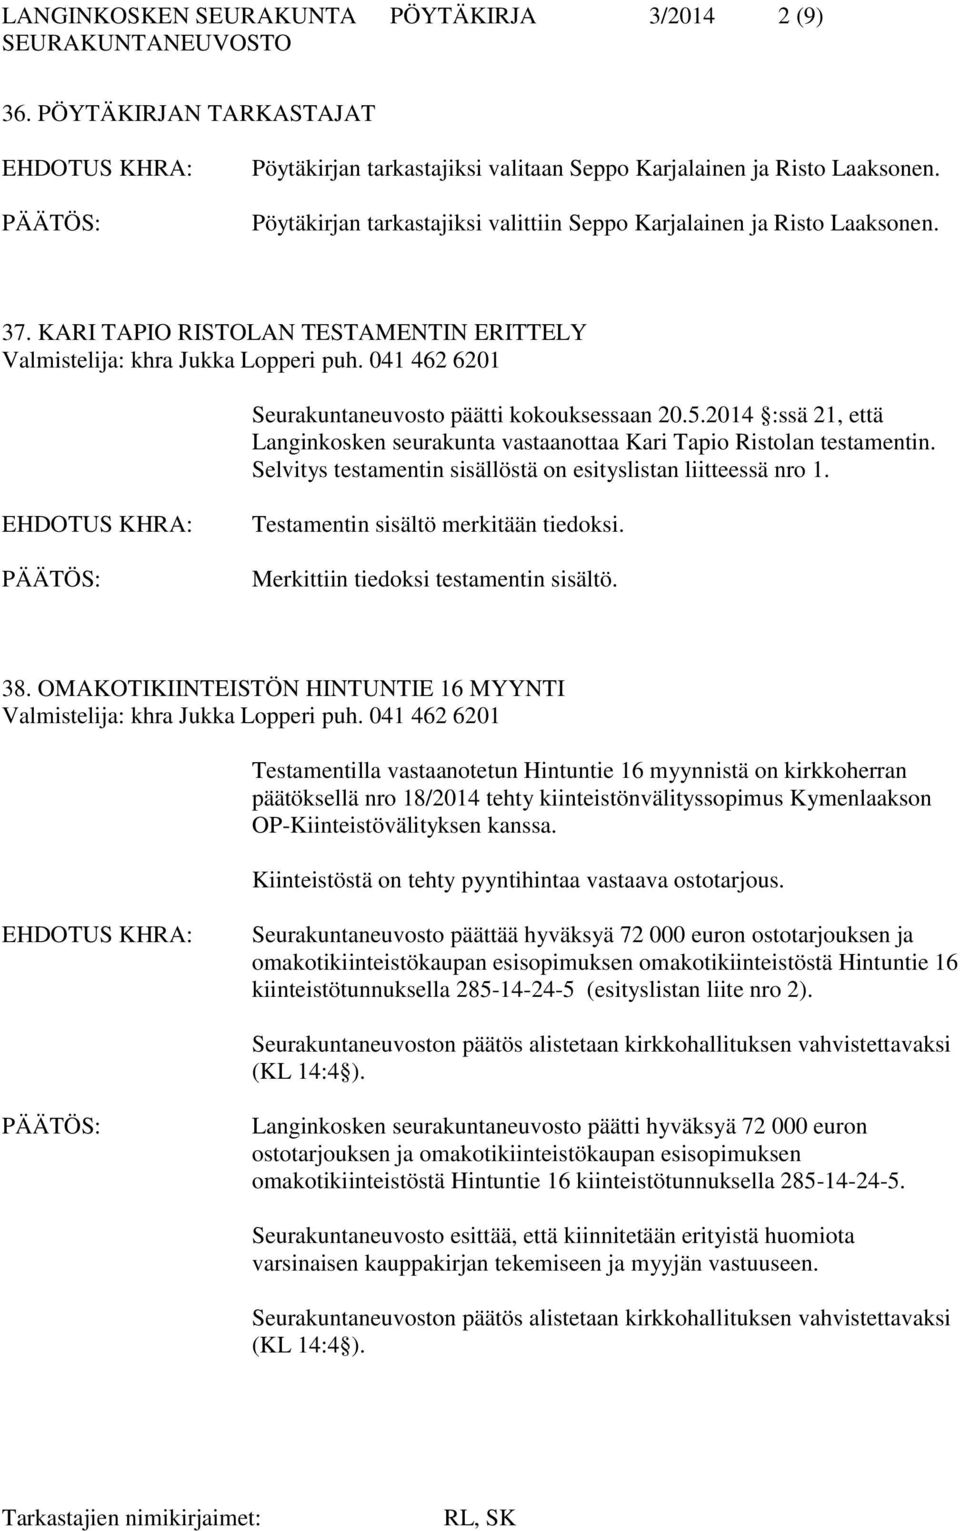 041 462 6201 Seurakuntaneuvosto päätti kokouksessaan 20.5.2014 :ssä 21, että Langinkosken seurakunta vastaanottaa Kari Tapio Ristolan testamentin.